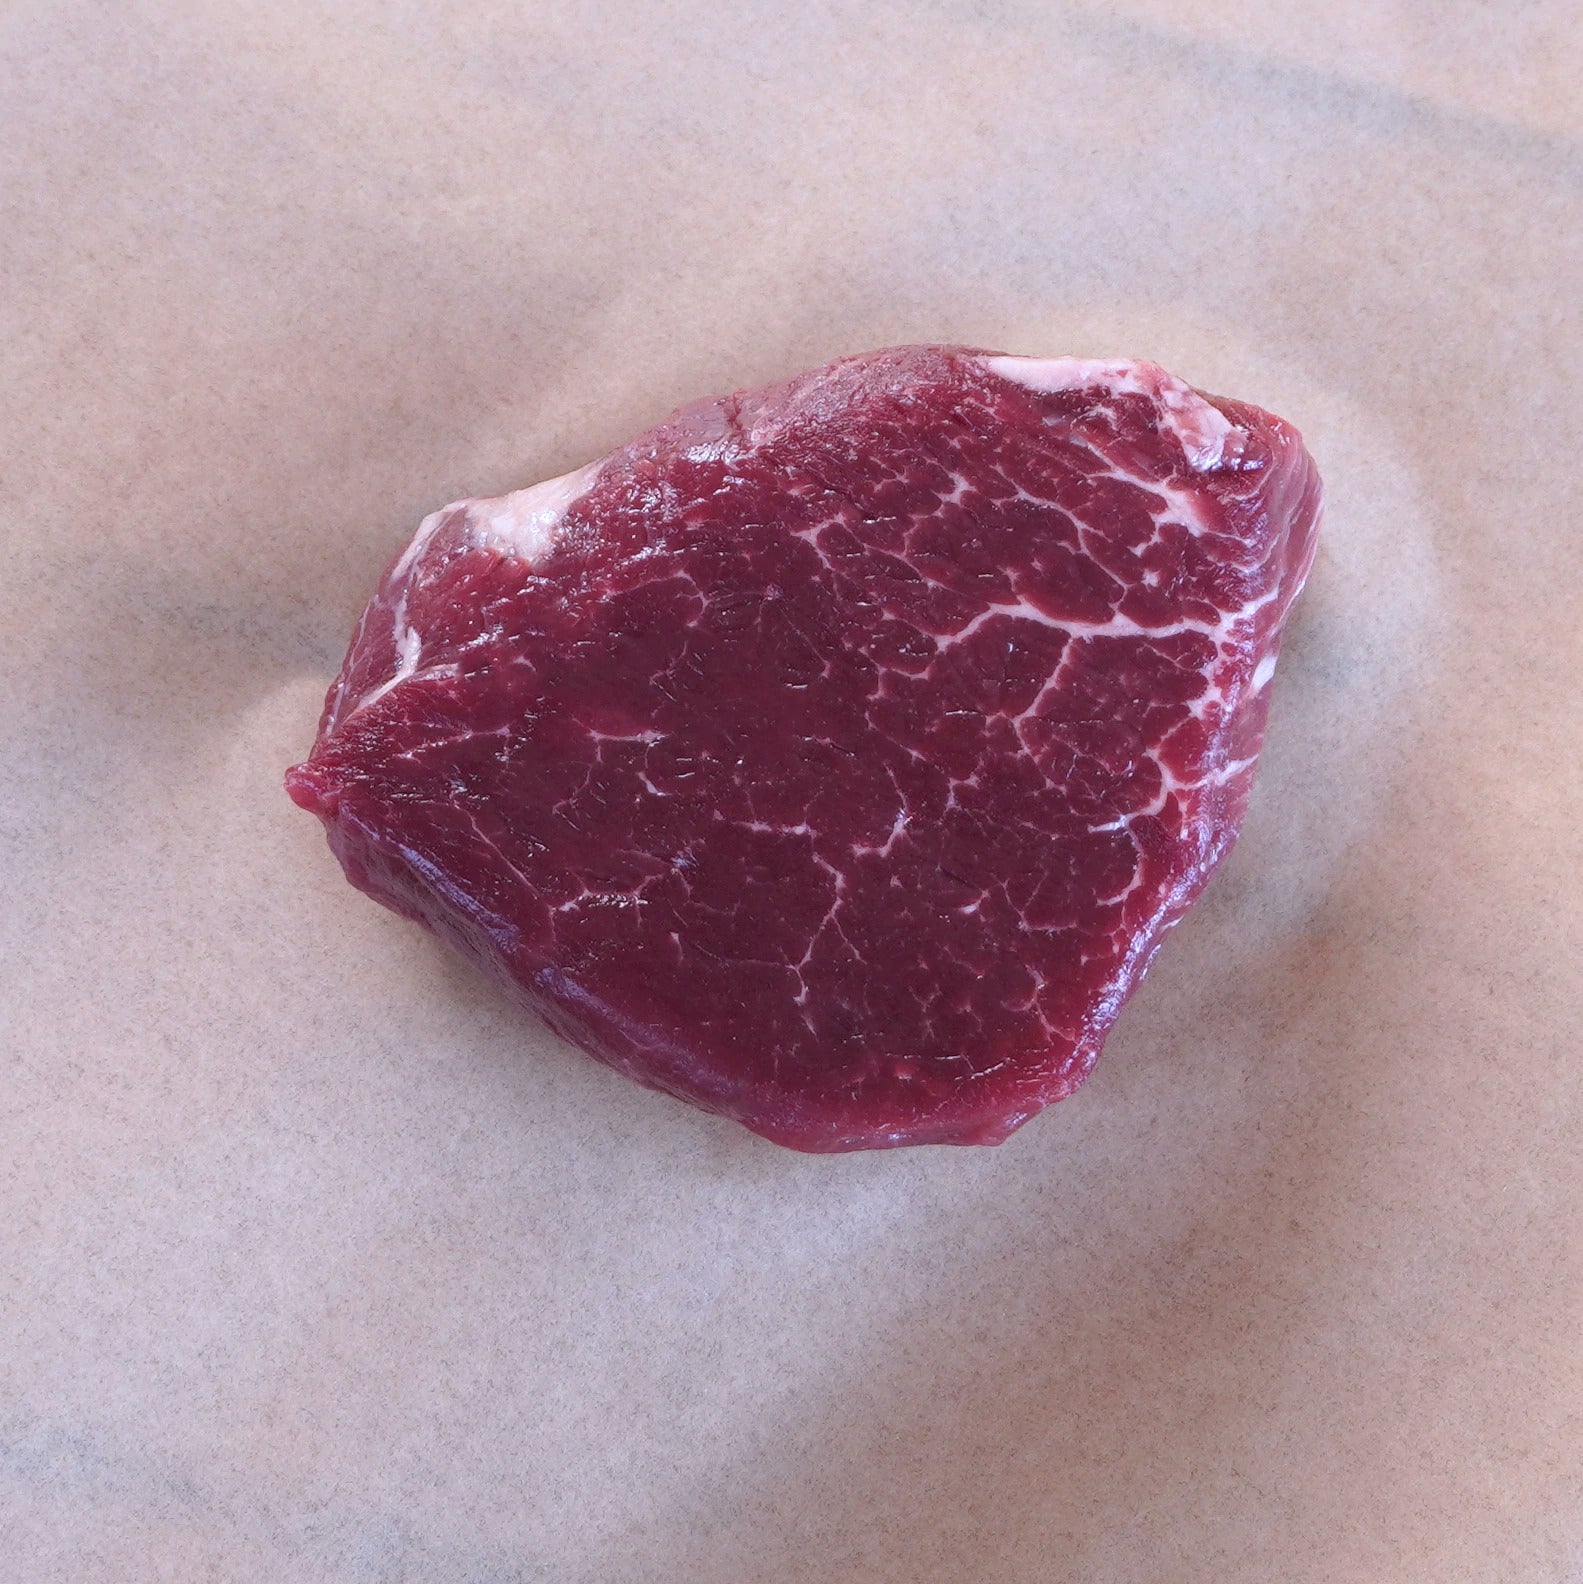 グラスフェッドビーフ 牛肉 ヒレ ステーキ 詰め合わせセット ニュージーランド産 牧草牛 合計10点 (2kg) ホライズンファームズ